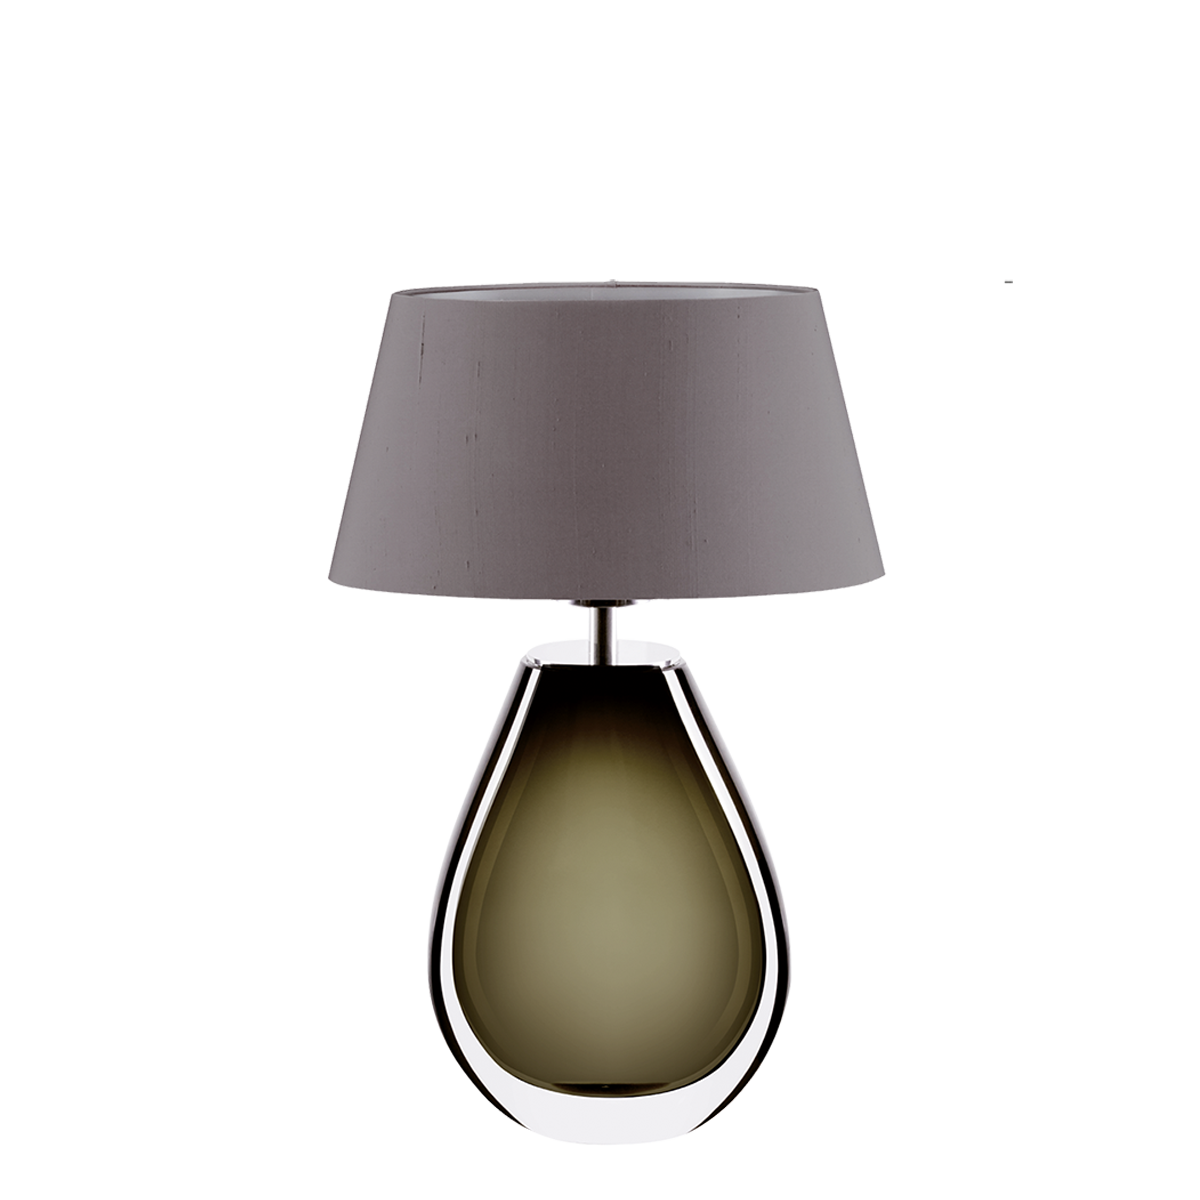 Murana 3 exklusive ovale Tischleuchte, Glas im Farbton Olive, mit Seiden Lampenschirm Menzel Leuchten Manufaktur